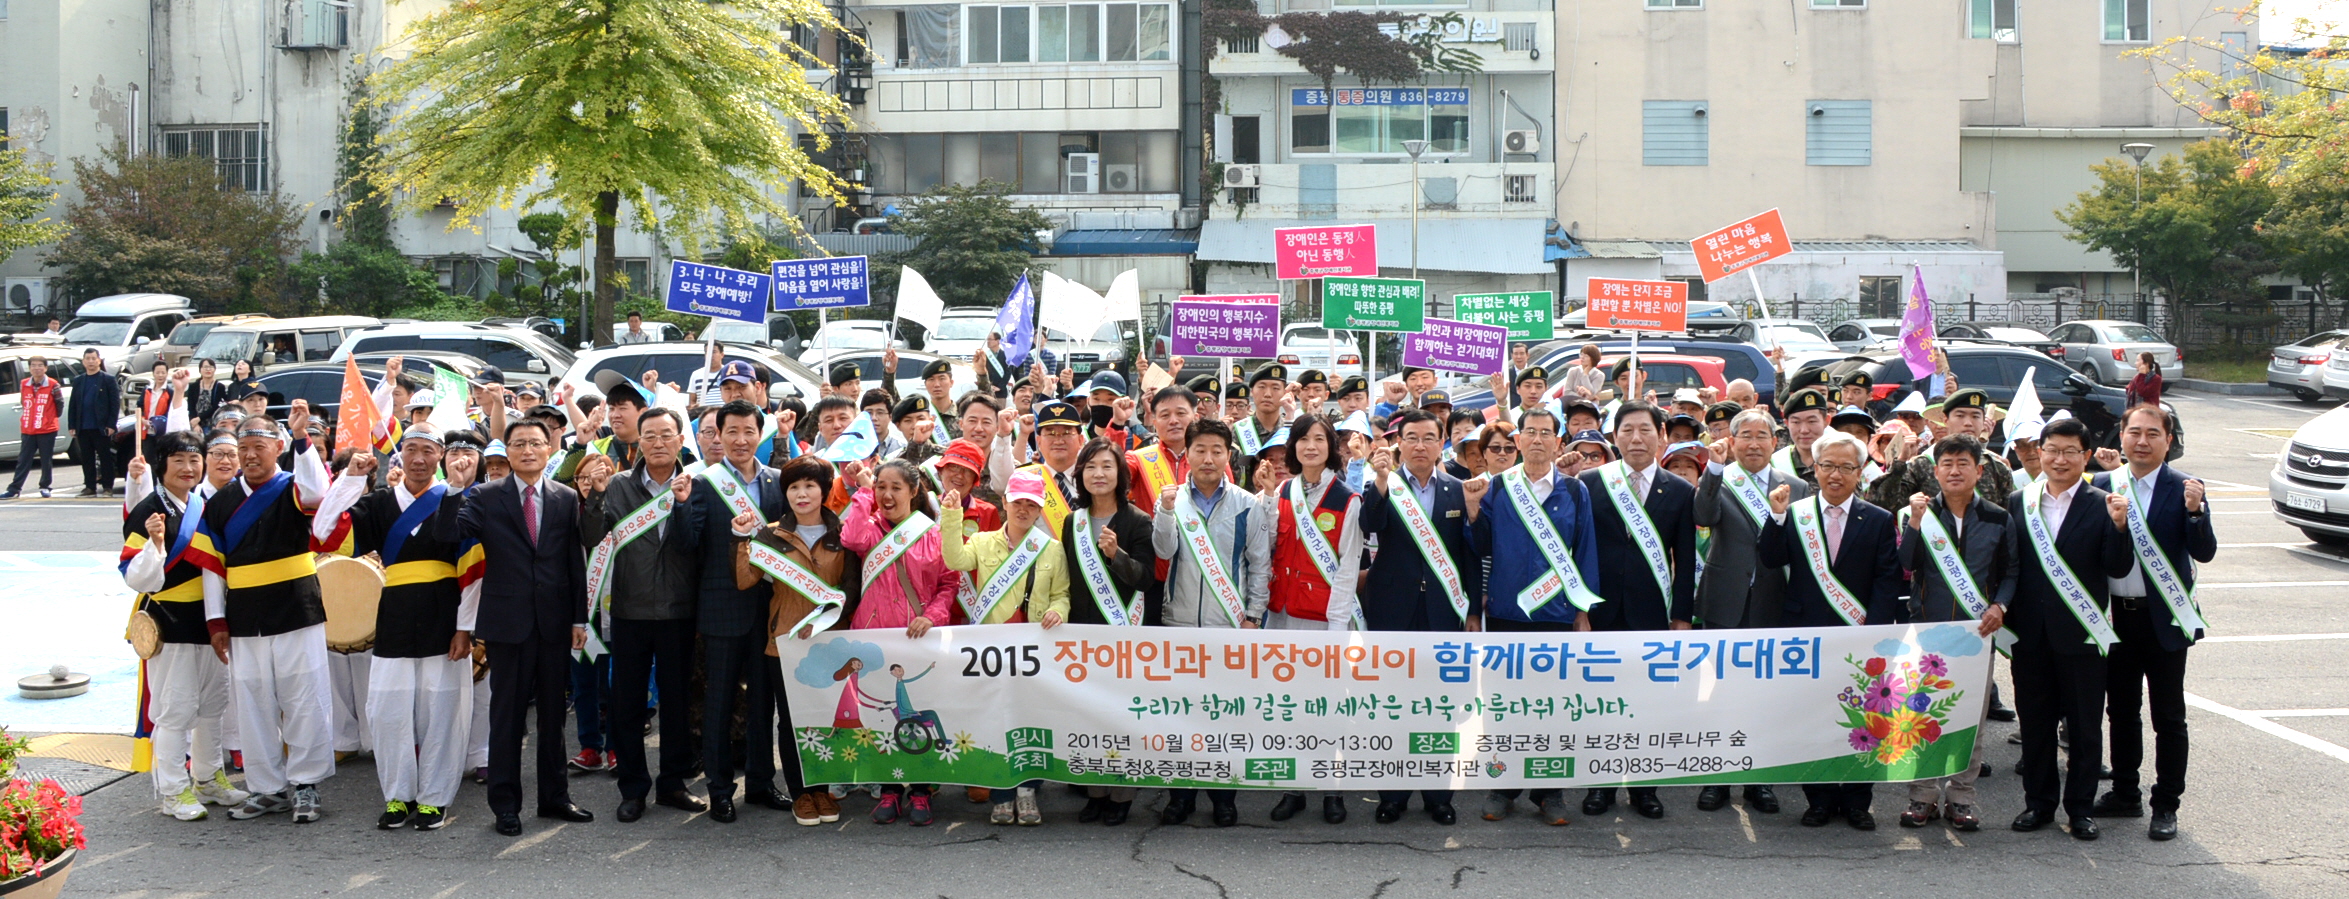 2015년 장애인식 개선 걷기 대회’개최